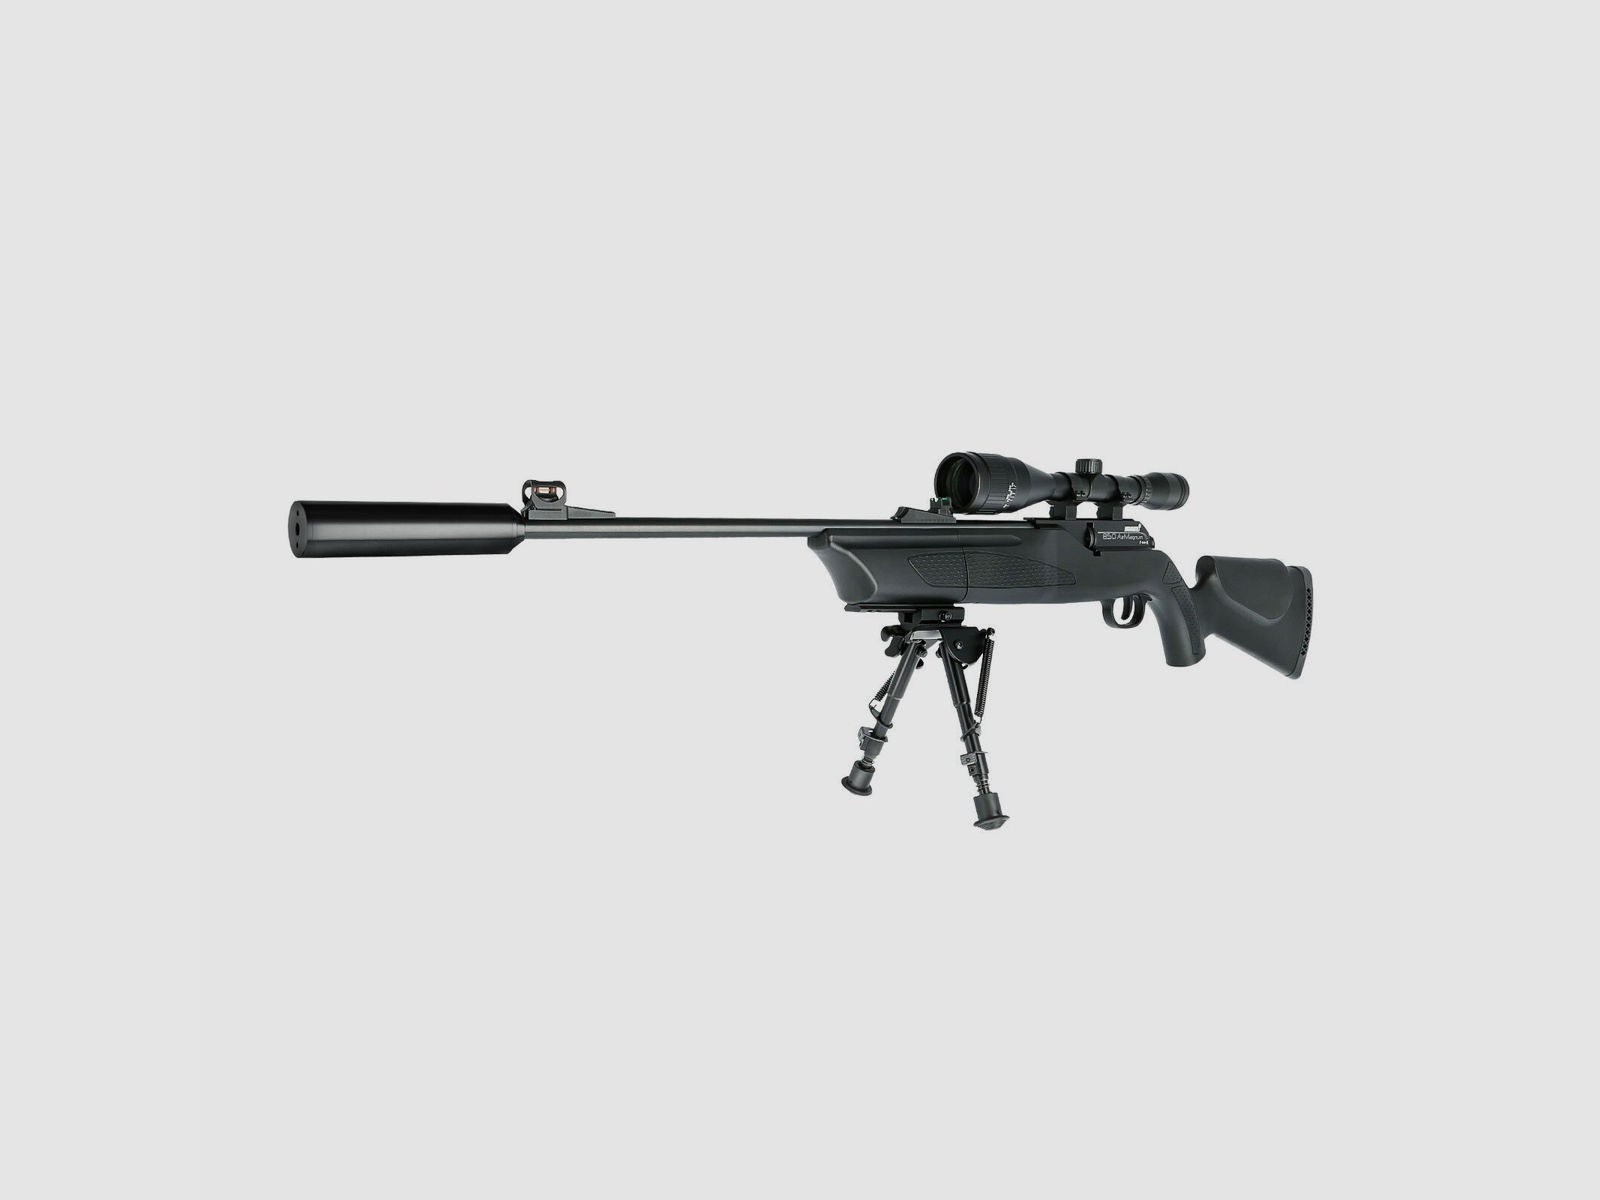 SET Hämmerli Umarex 850 AirMagnum 4,5 mm CO2-Gewehr (P18) + Zweibein + Zielfernrohr + Schalldämpfer